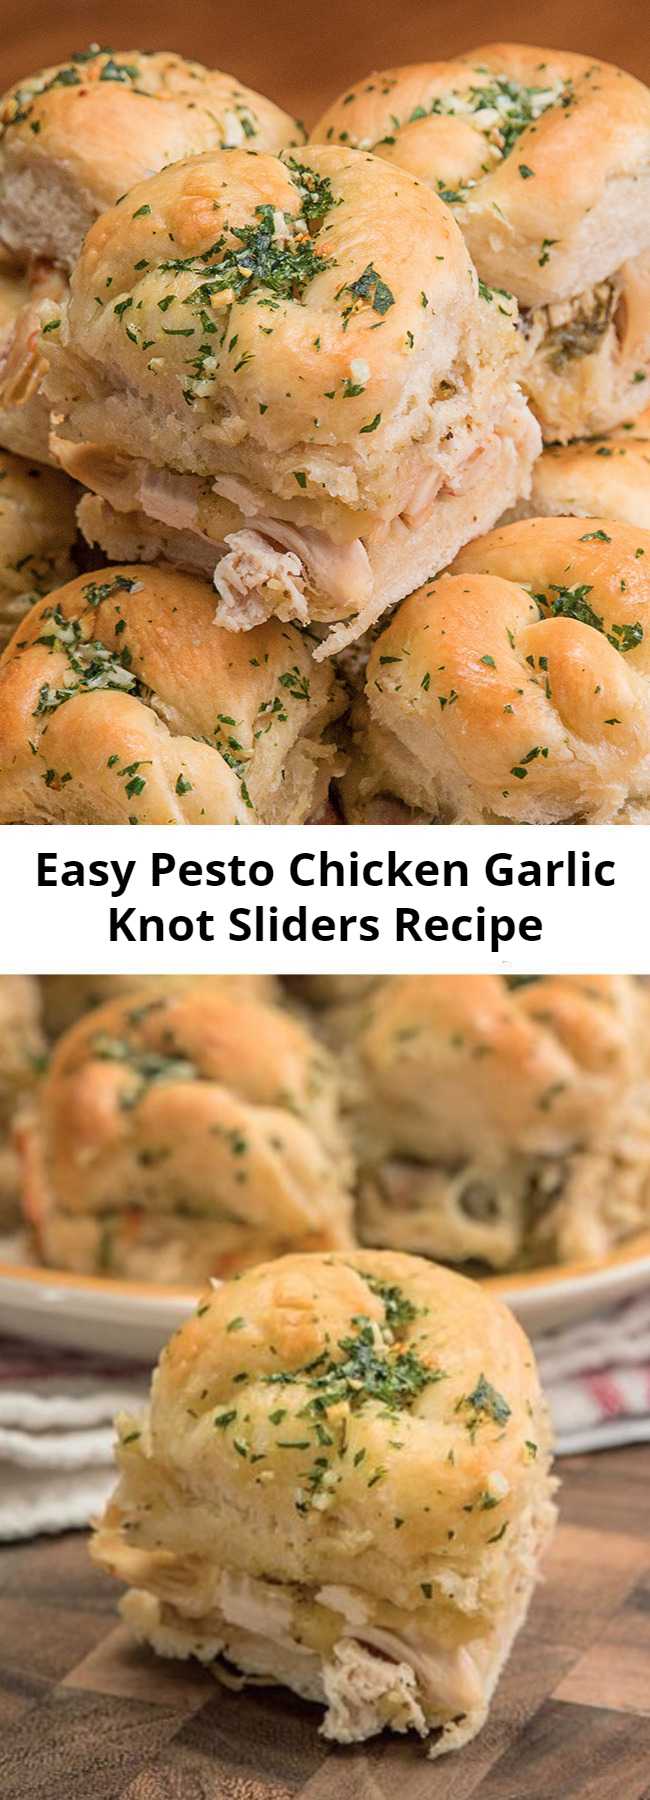 Easy Pesto Chicken Garlic Knot Sliders Recipe